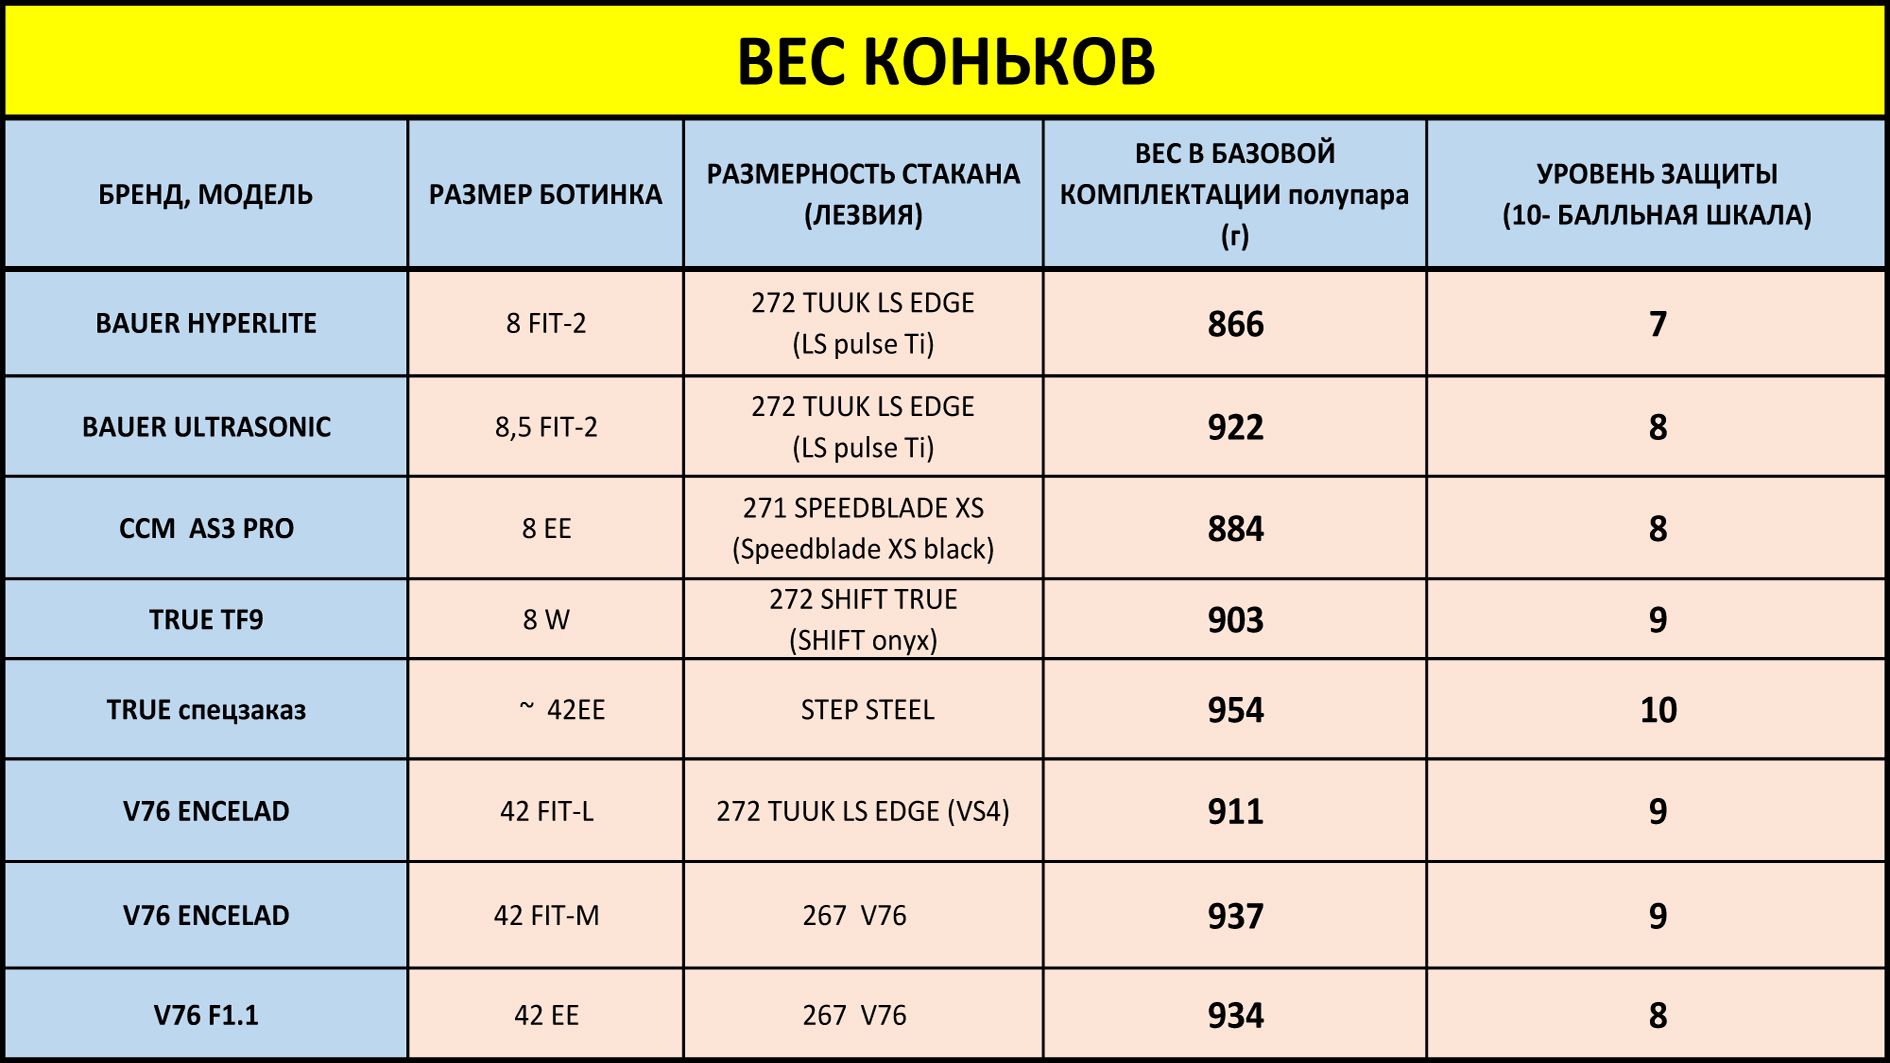 Сравнительная таблица по весу топовых профессиональных коньков BAUER (БАУЭР), ССМ, TRUE(ТРУ), V76 ENCELAD (ЭНЦЕЛАД), V76 F1.1